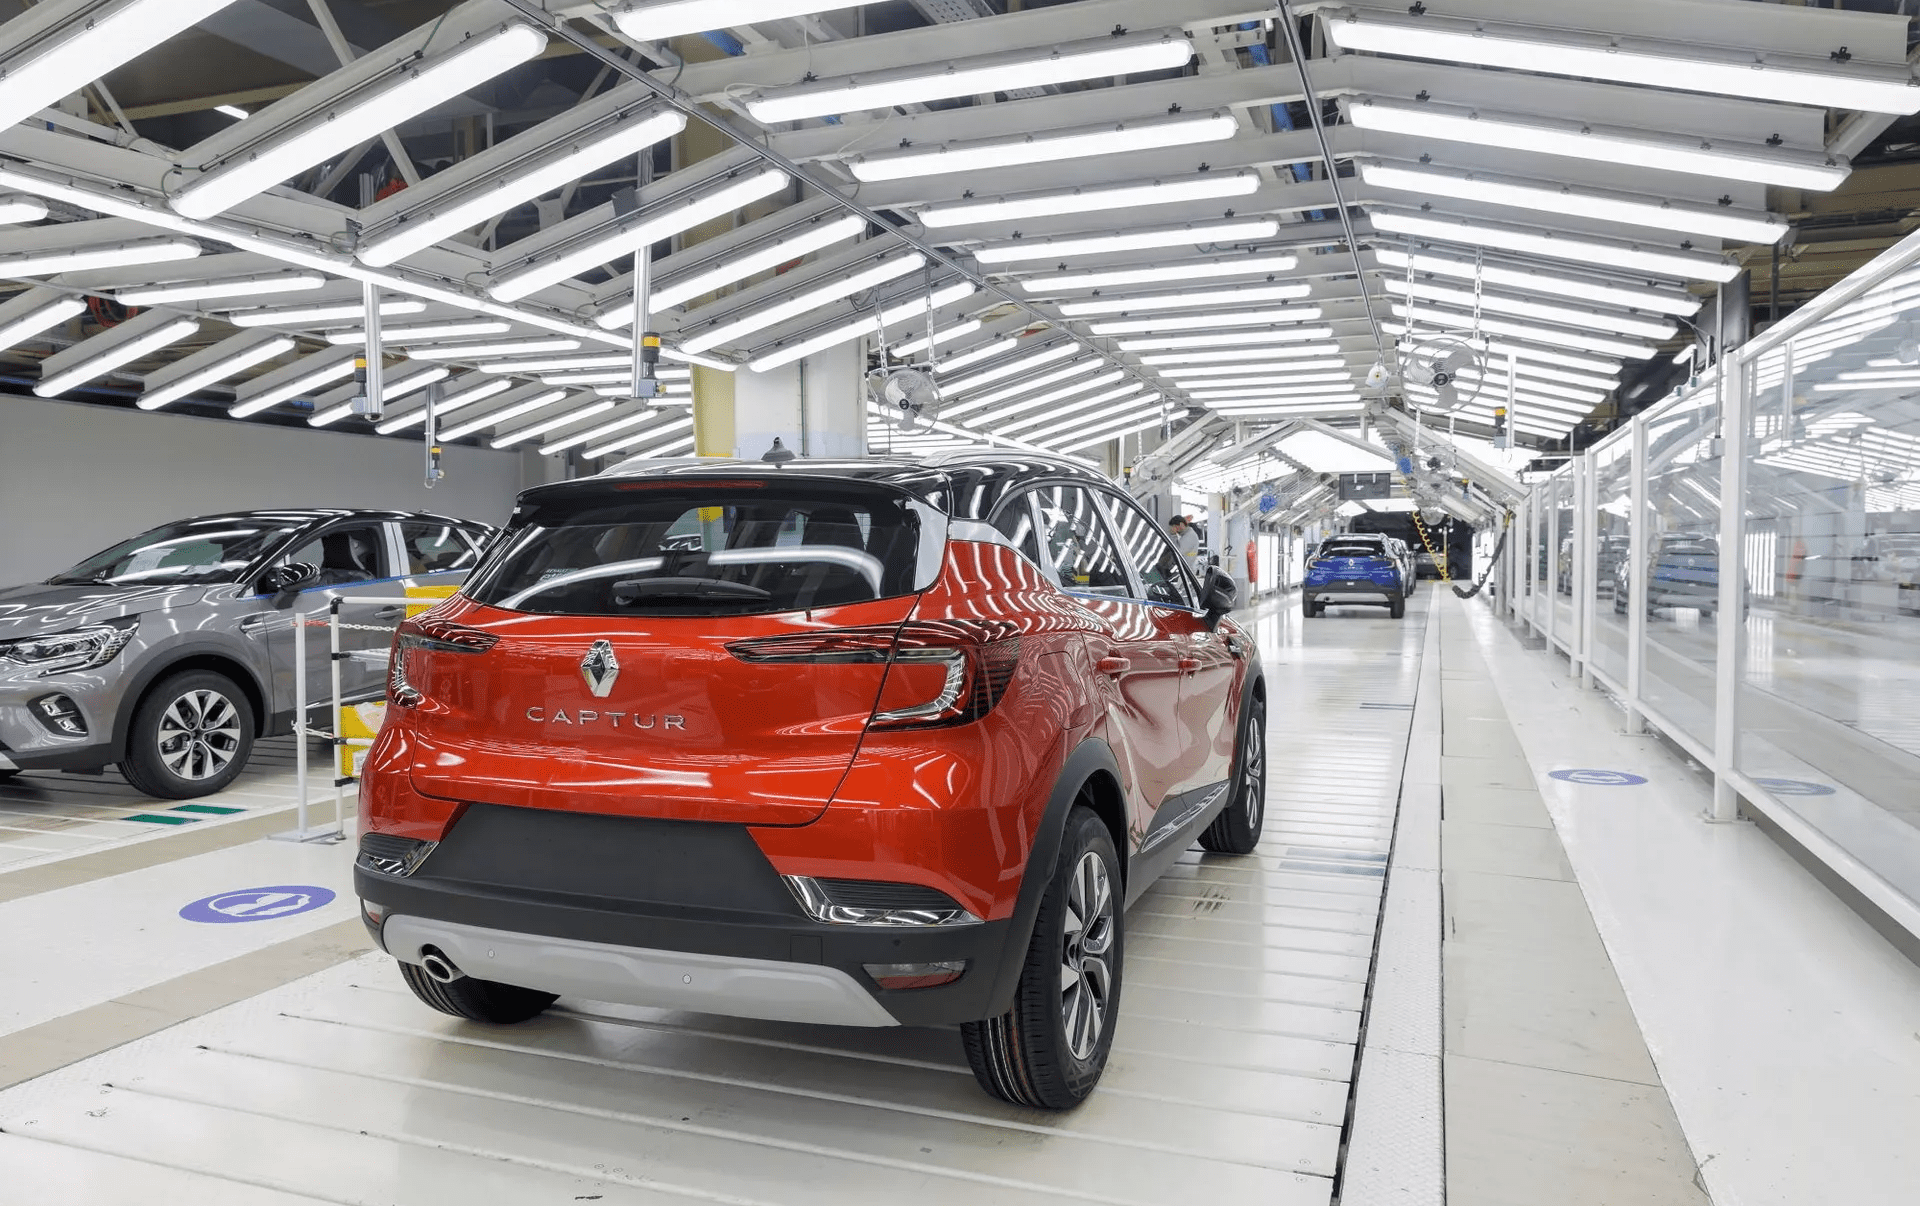 Renault-Mitarbeiter raubten 600.000 Euro in einer Fabrik